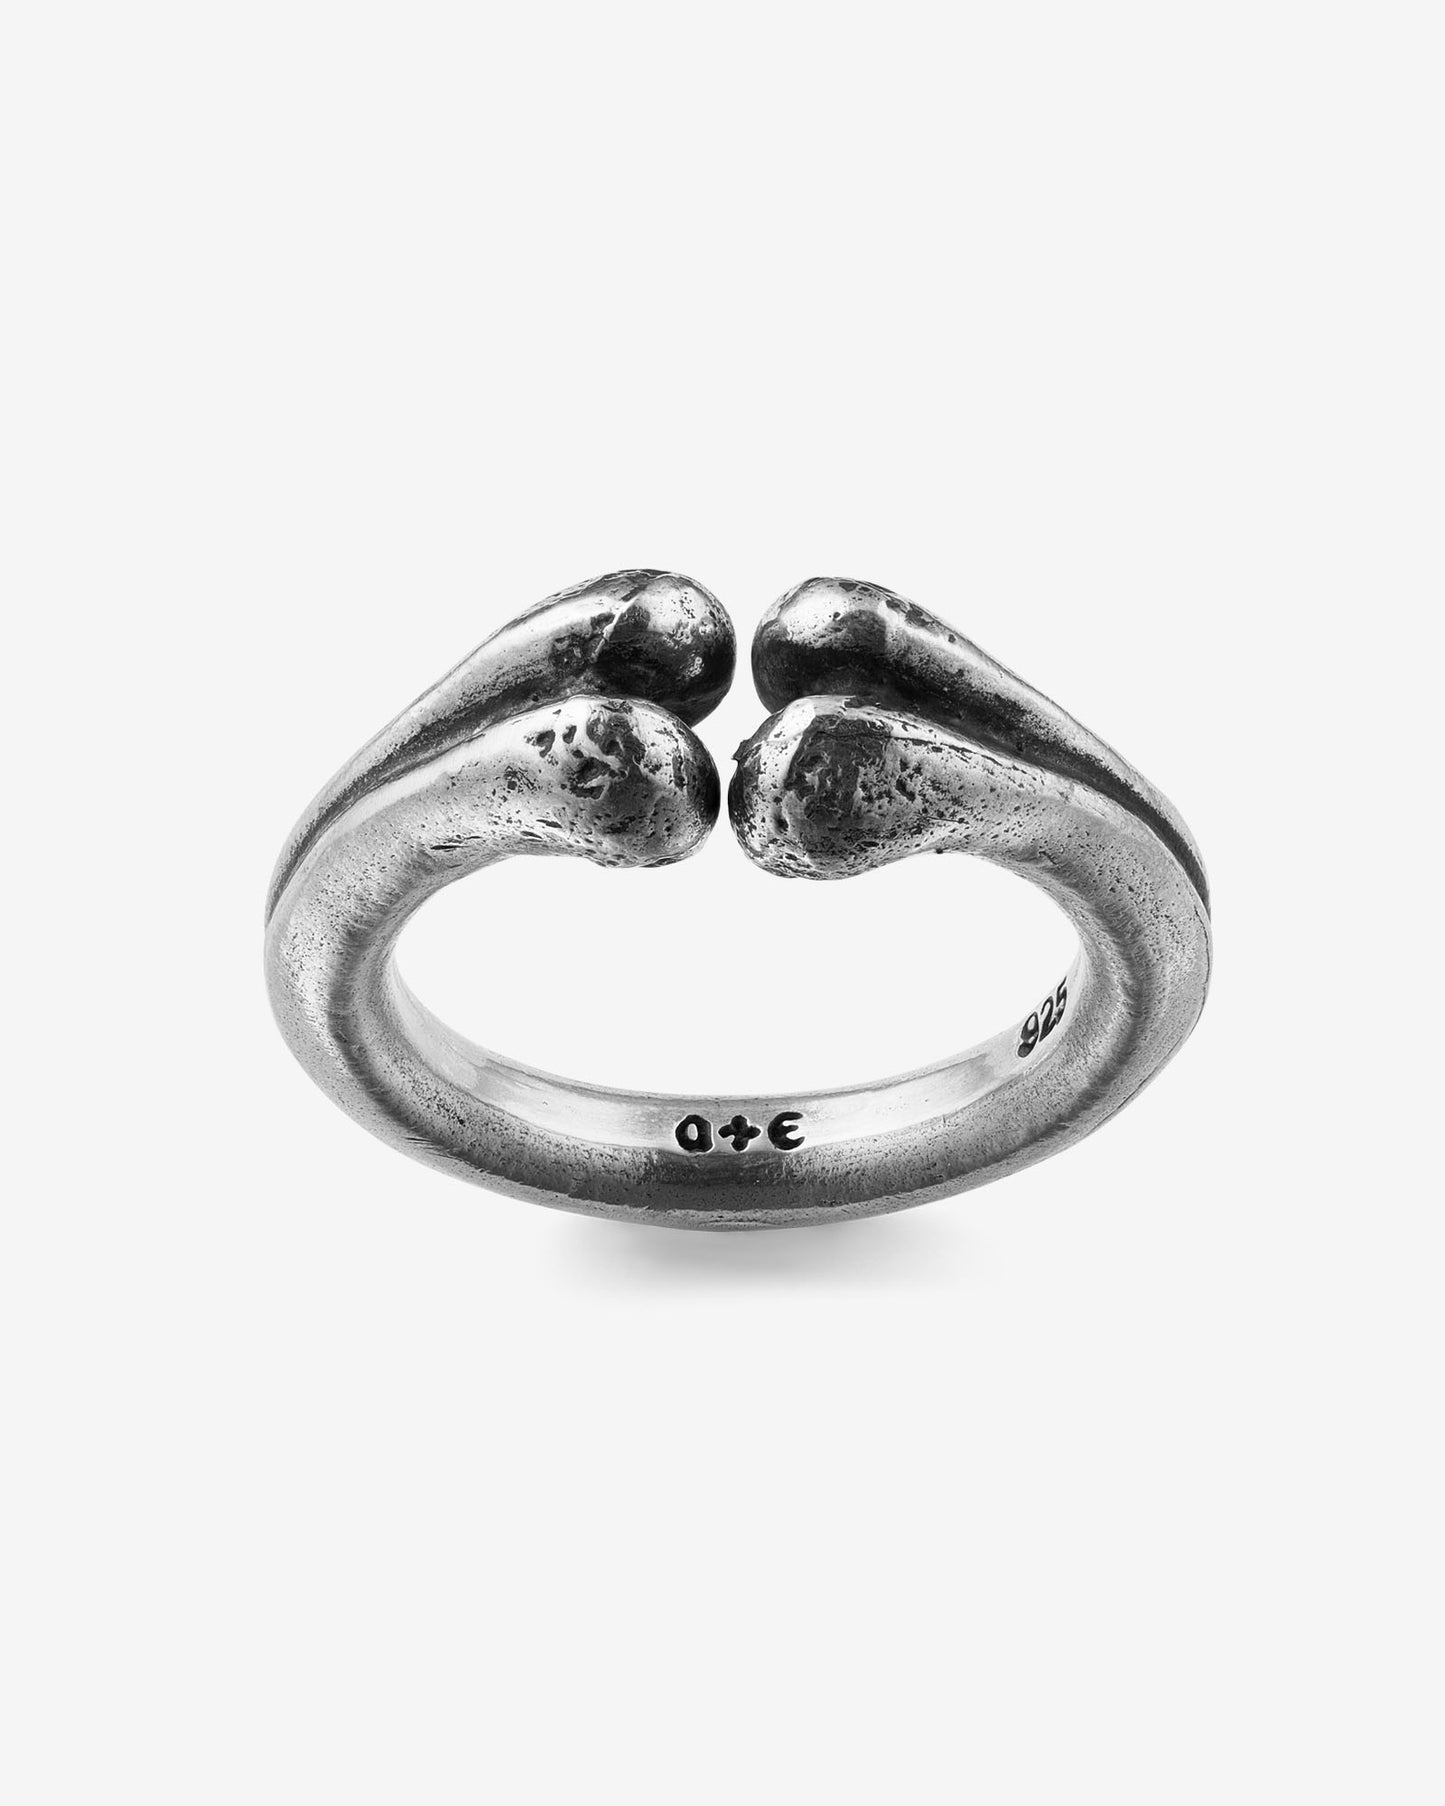 Eternal Ring (Mine)